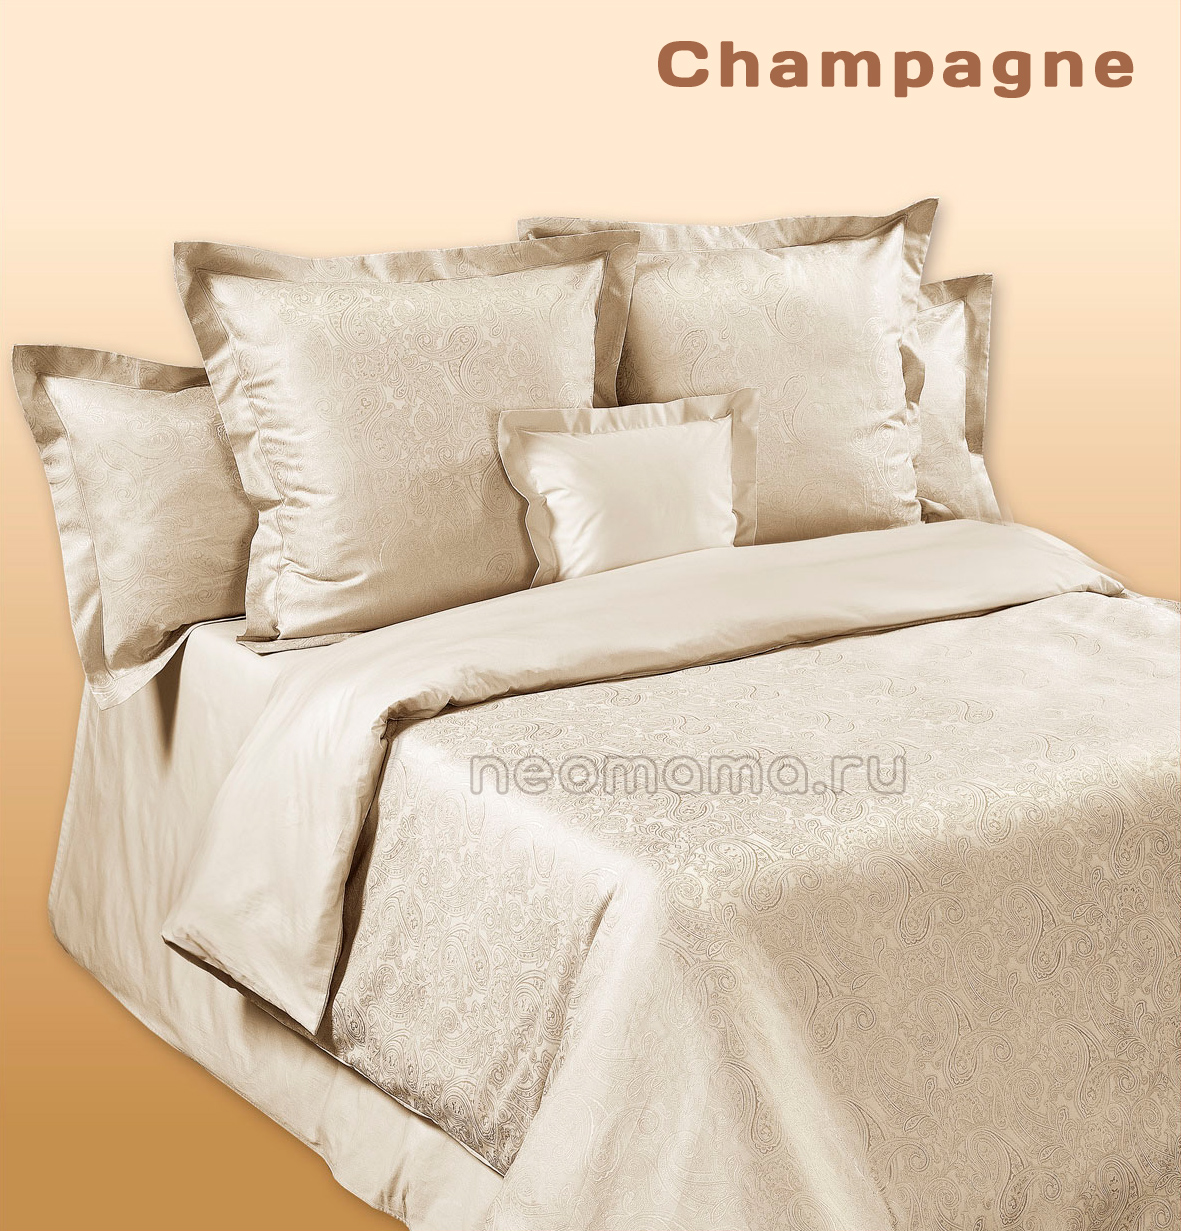 Постельное белье жаккард CHAMPAGNE (CD Milan Jacquard) шампань (с 4-мя наволочками), АКЦИЯ